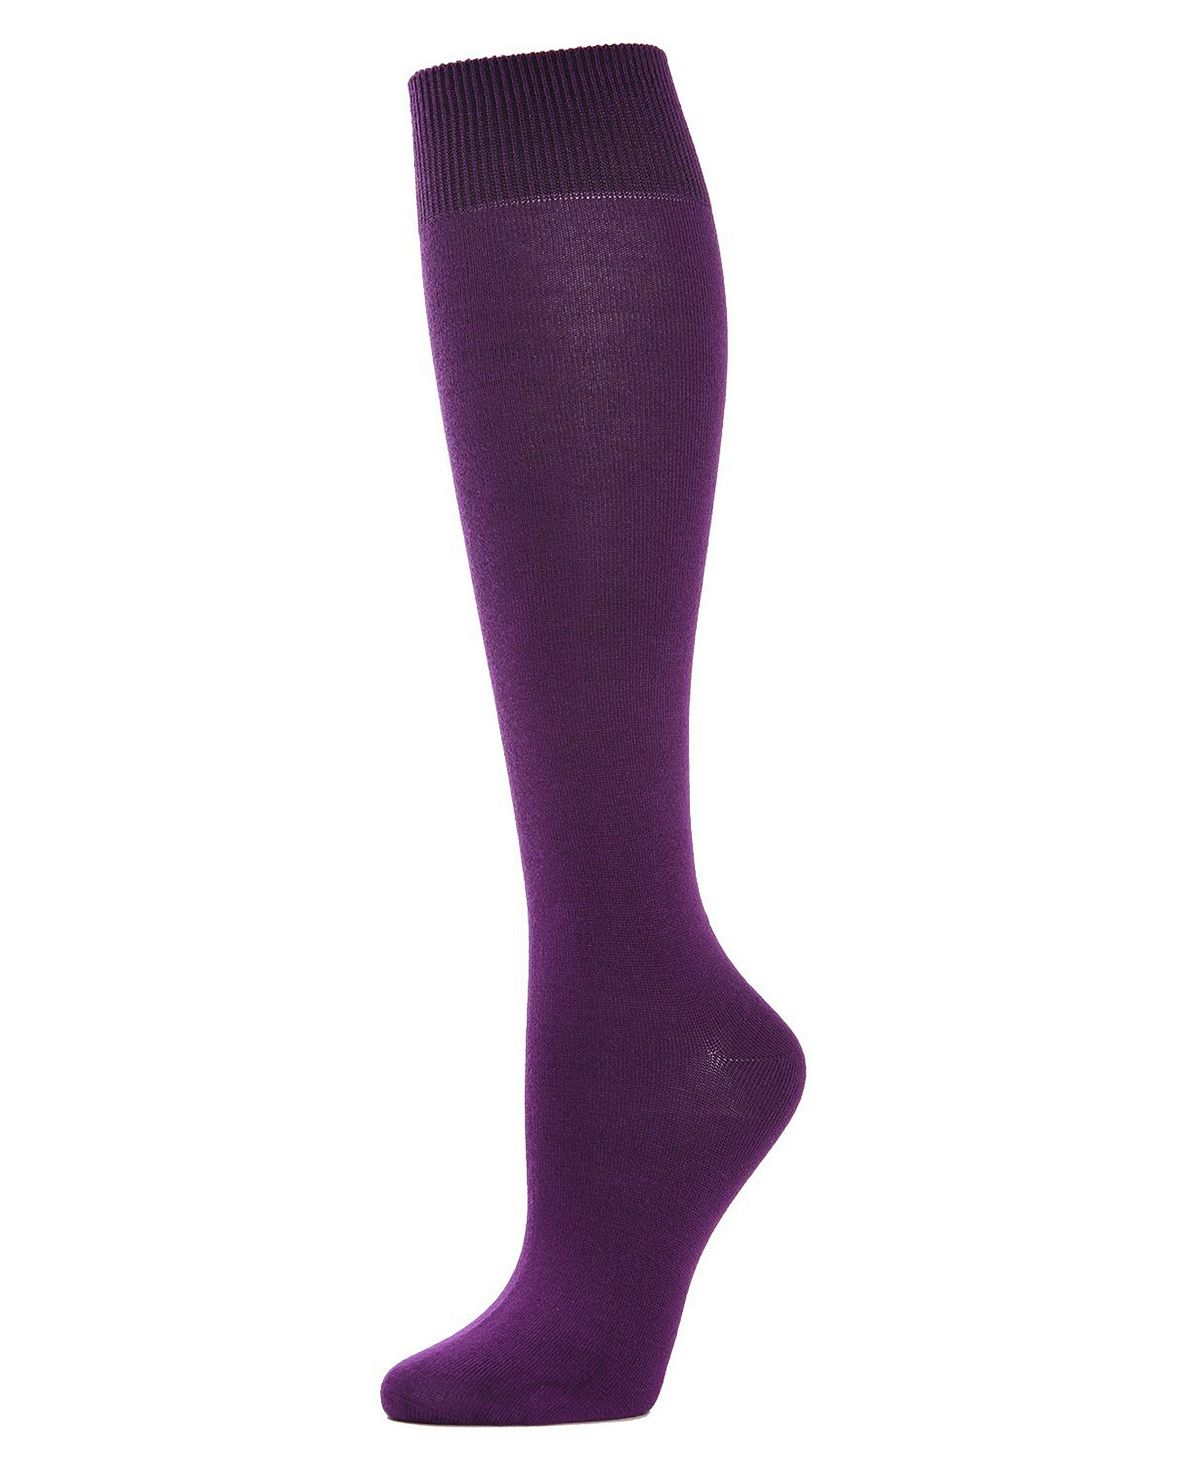 Женские трикотажные носки до колена из смеси бамбука MeMoi трикотажные носки с фирменным узором из смесового бамбука 4th